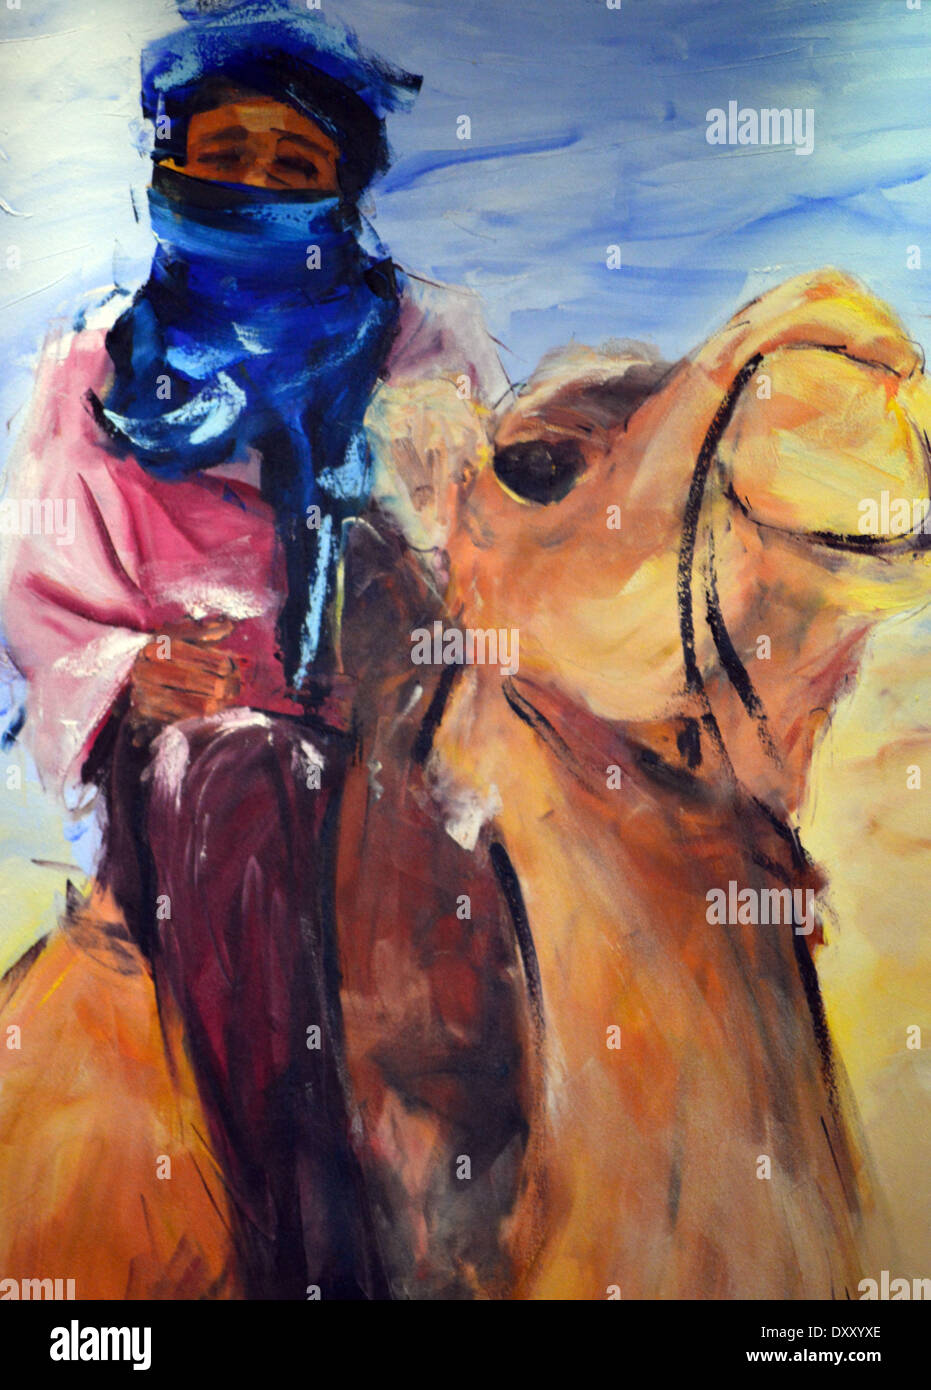 L'art africain, la peinture colorée de Bédouins arabes sur Camel sur l'affichage à la réception de l'hôtel Riu Touareg au Cap Vert Banque D'Images